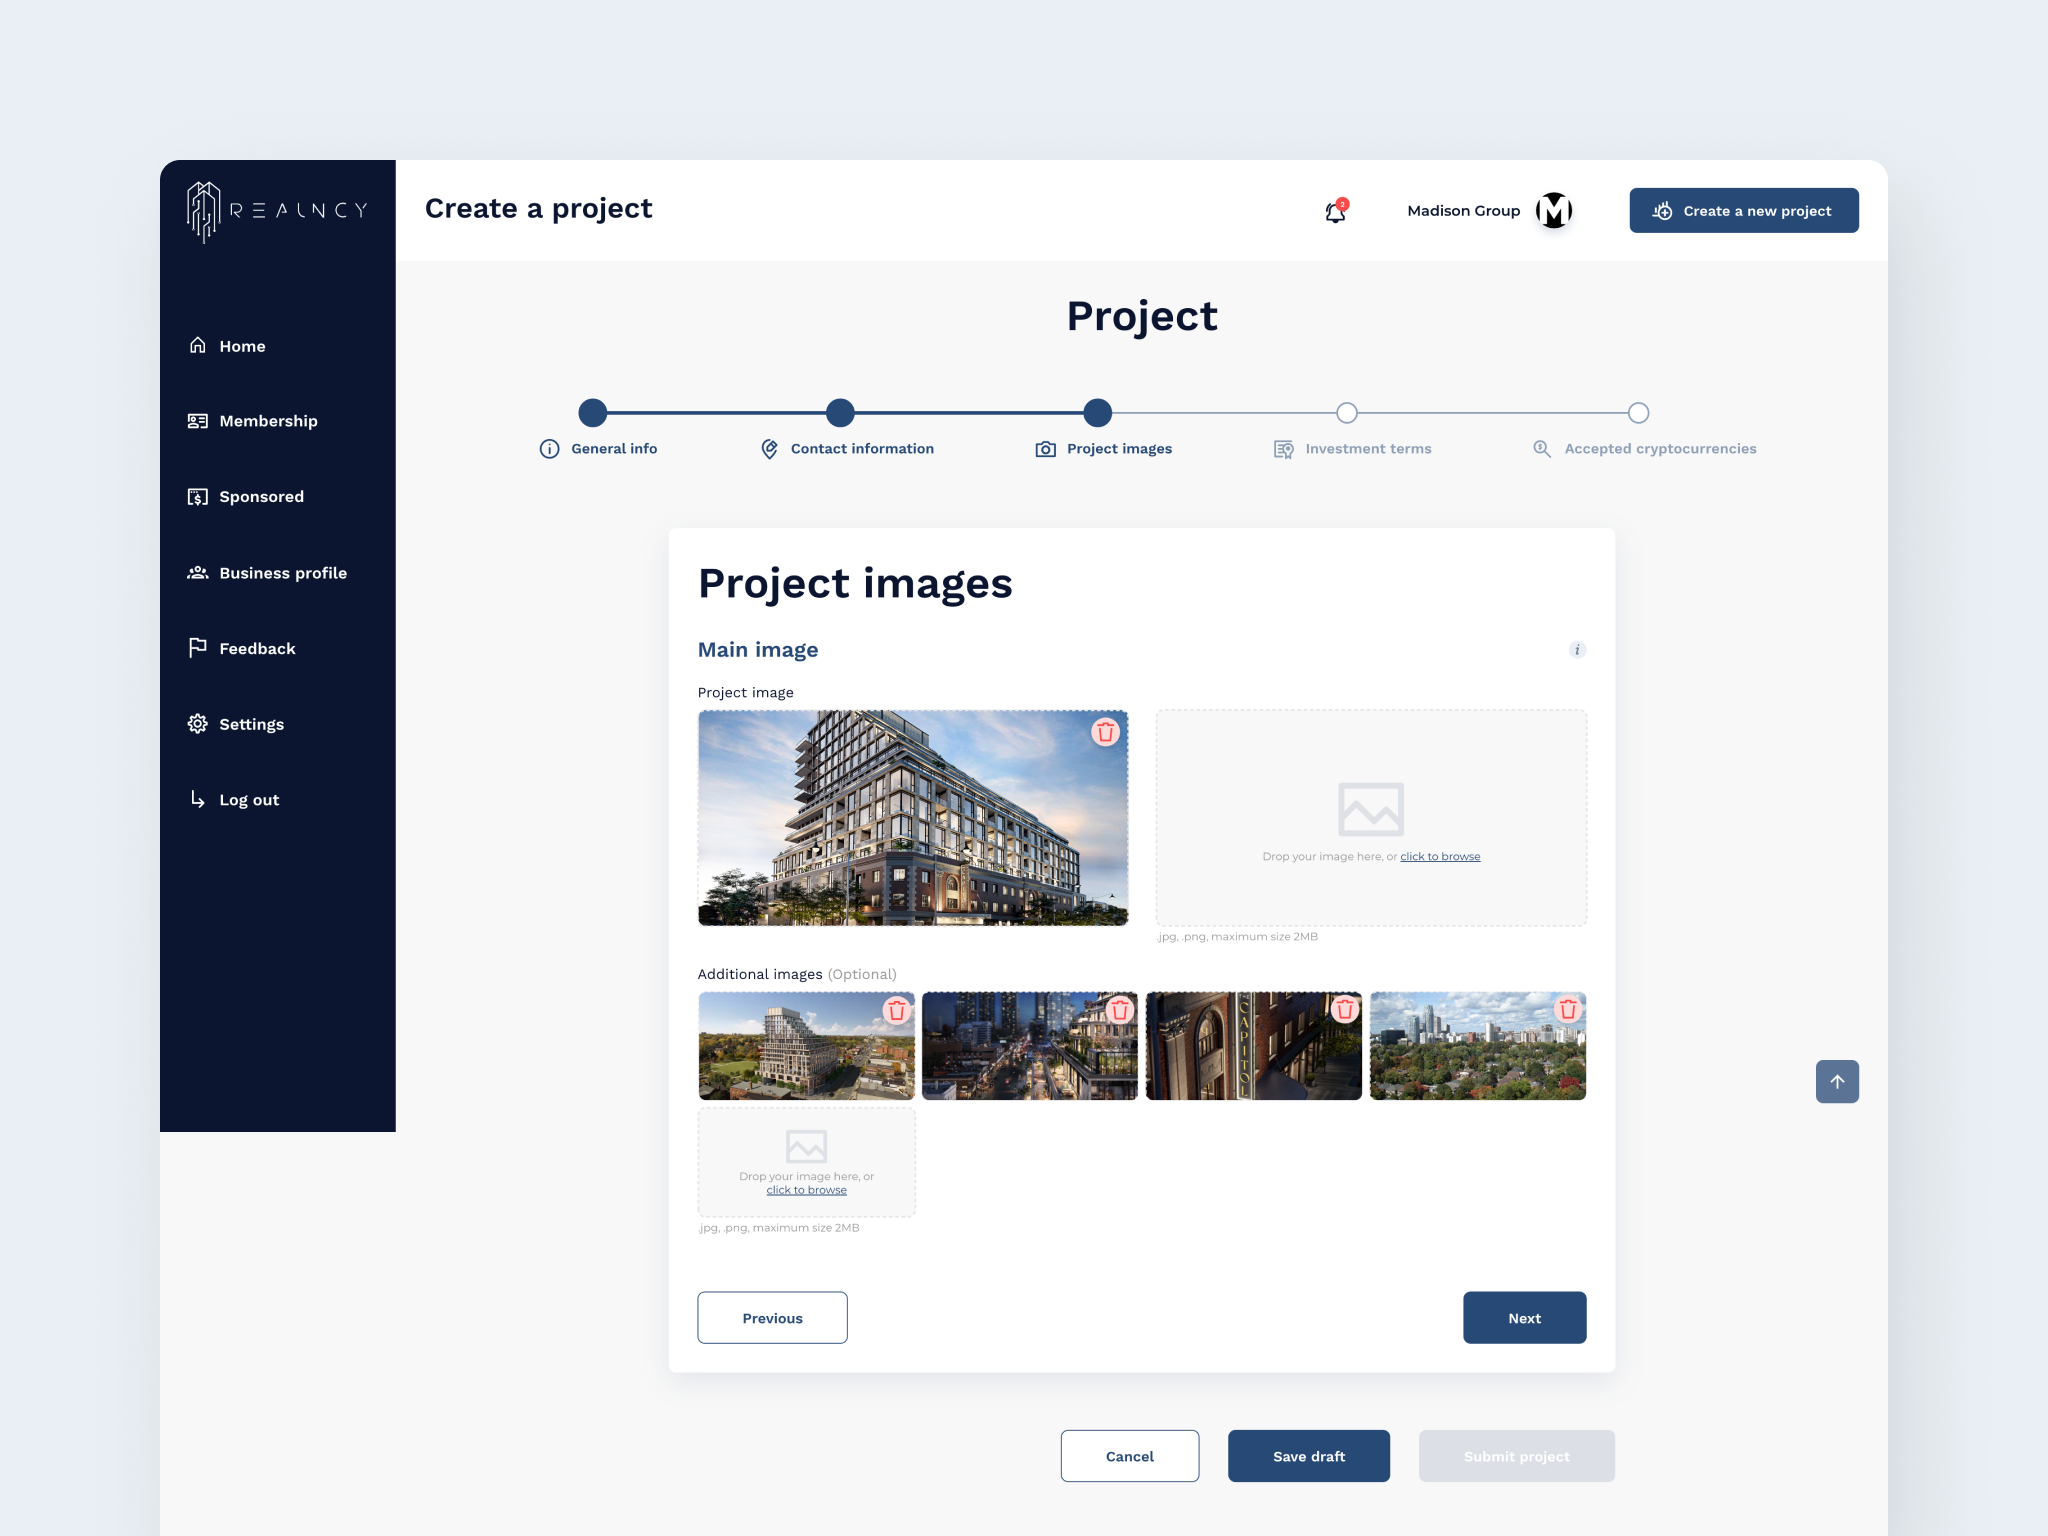 Realncy - Web App Design - Builder Portal - images